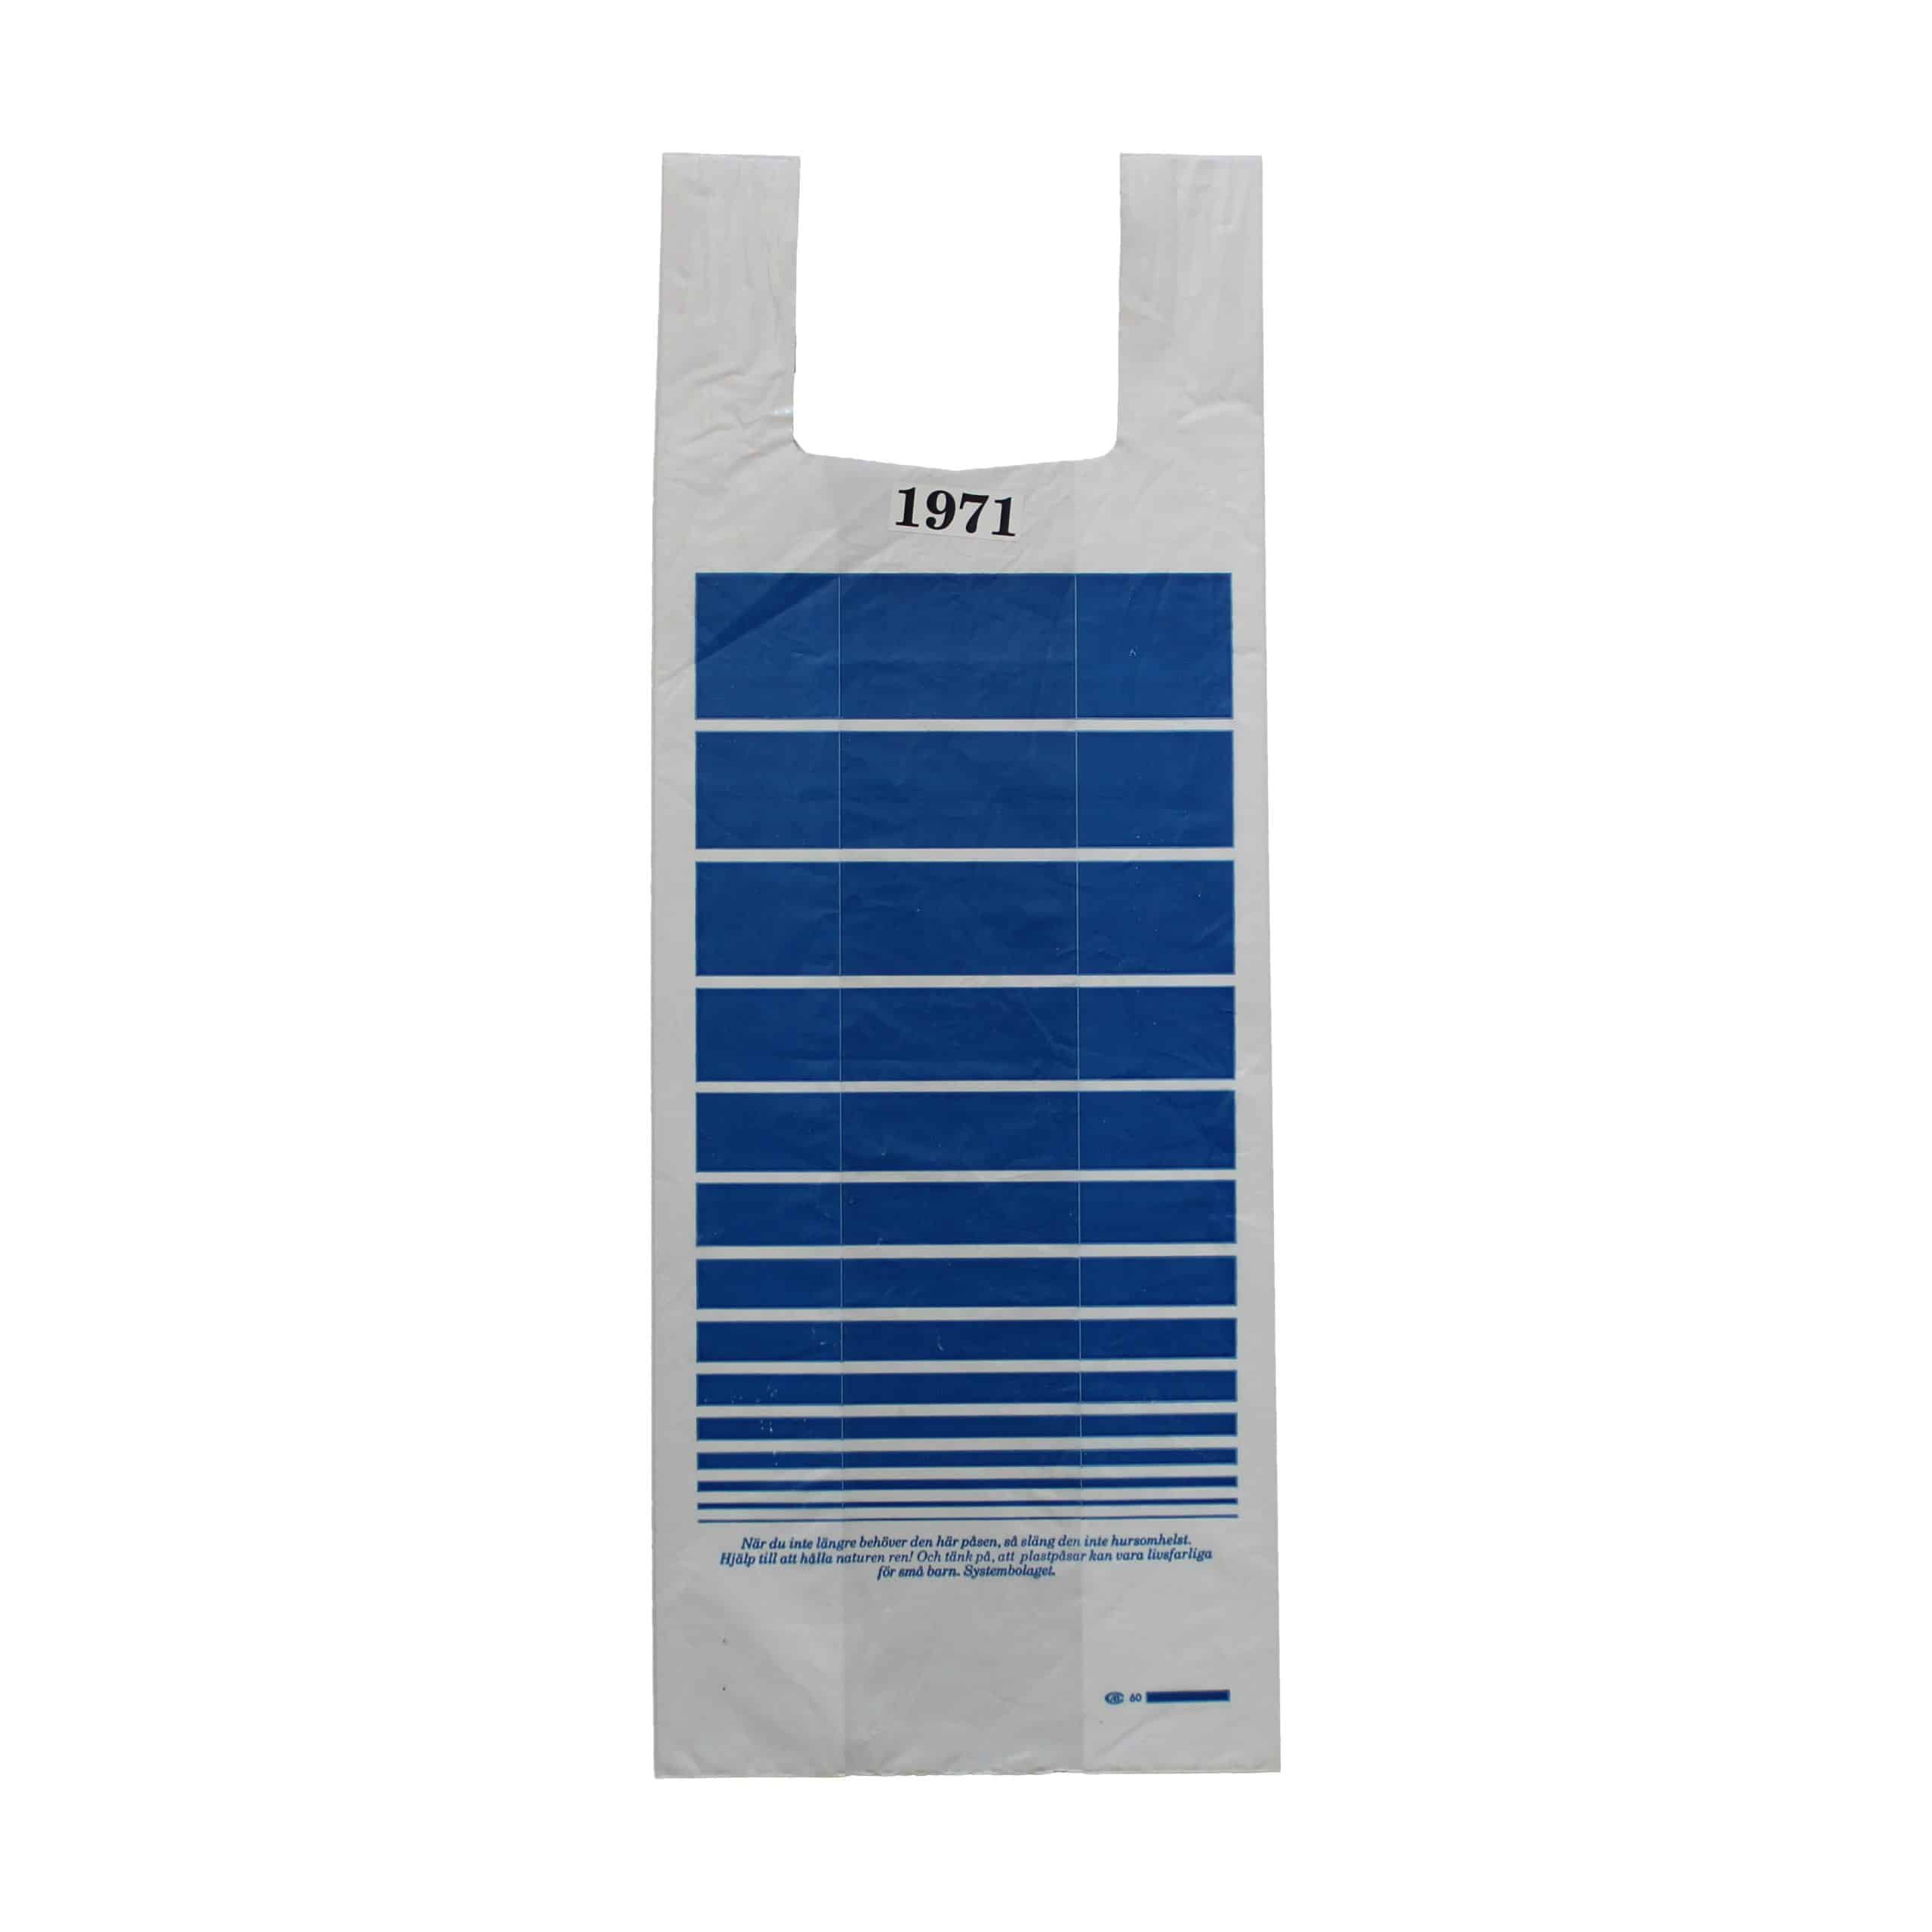 Vit plastpåse med blått tryckMönster.Tidpunkt: 1971; Deponent: Systembolaget / Systembolaget AB; Motiv-ID: SYS010013